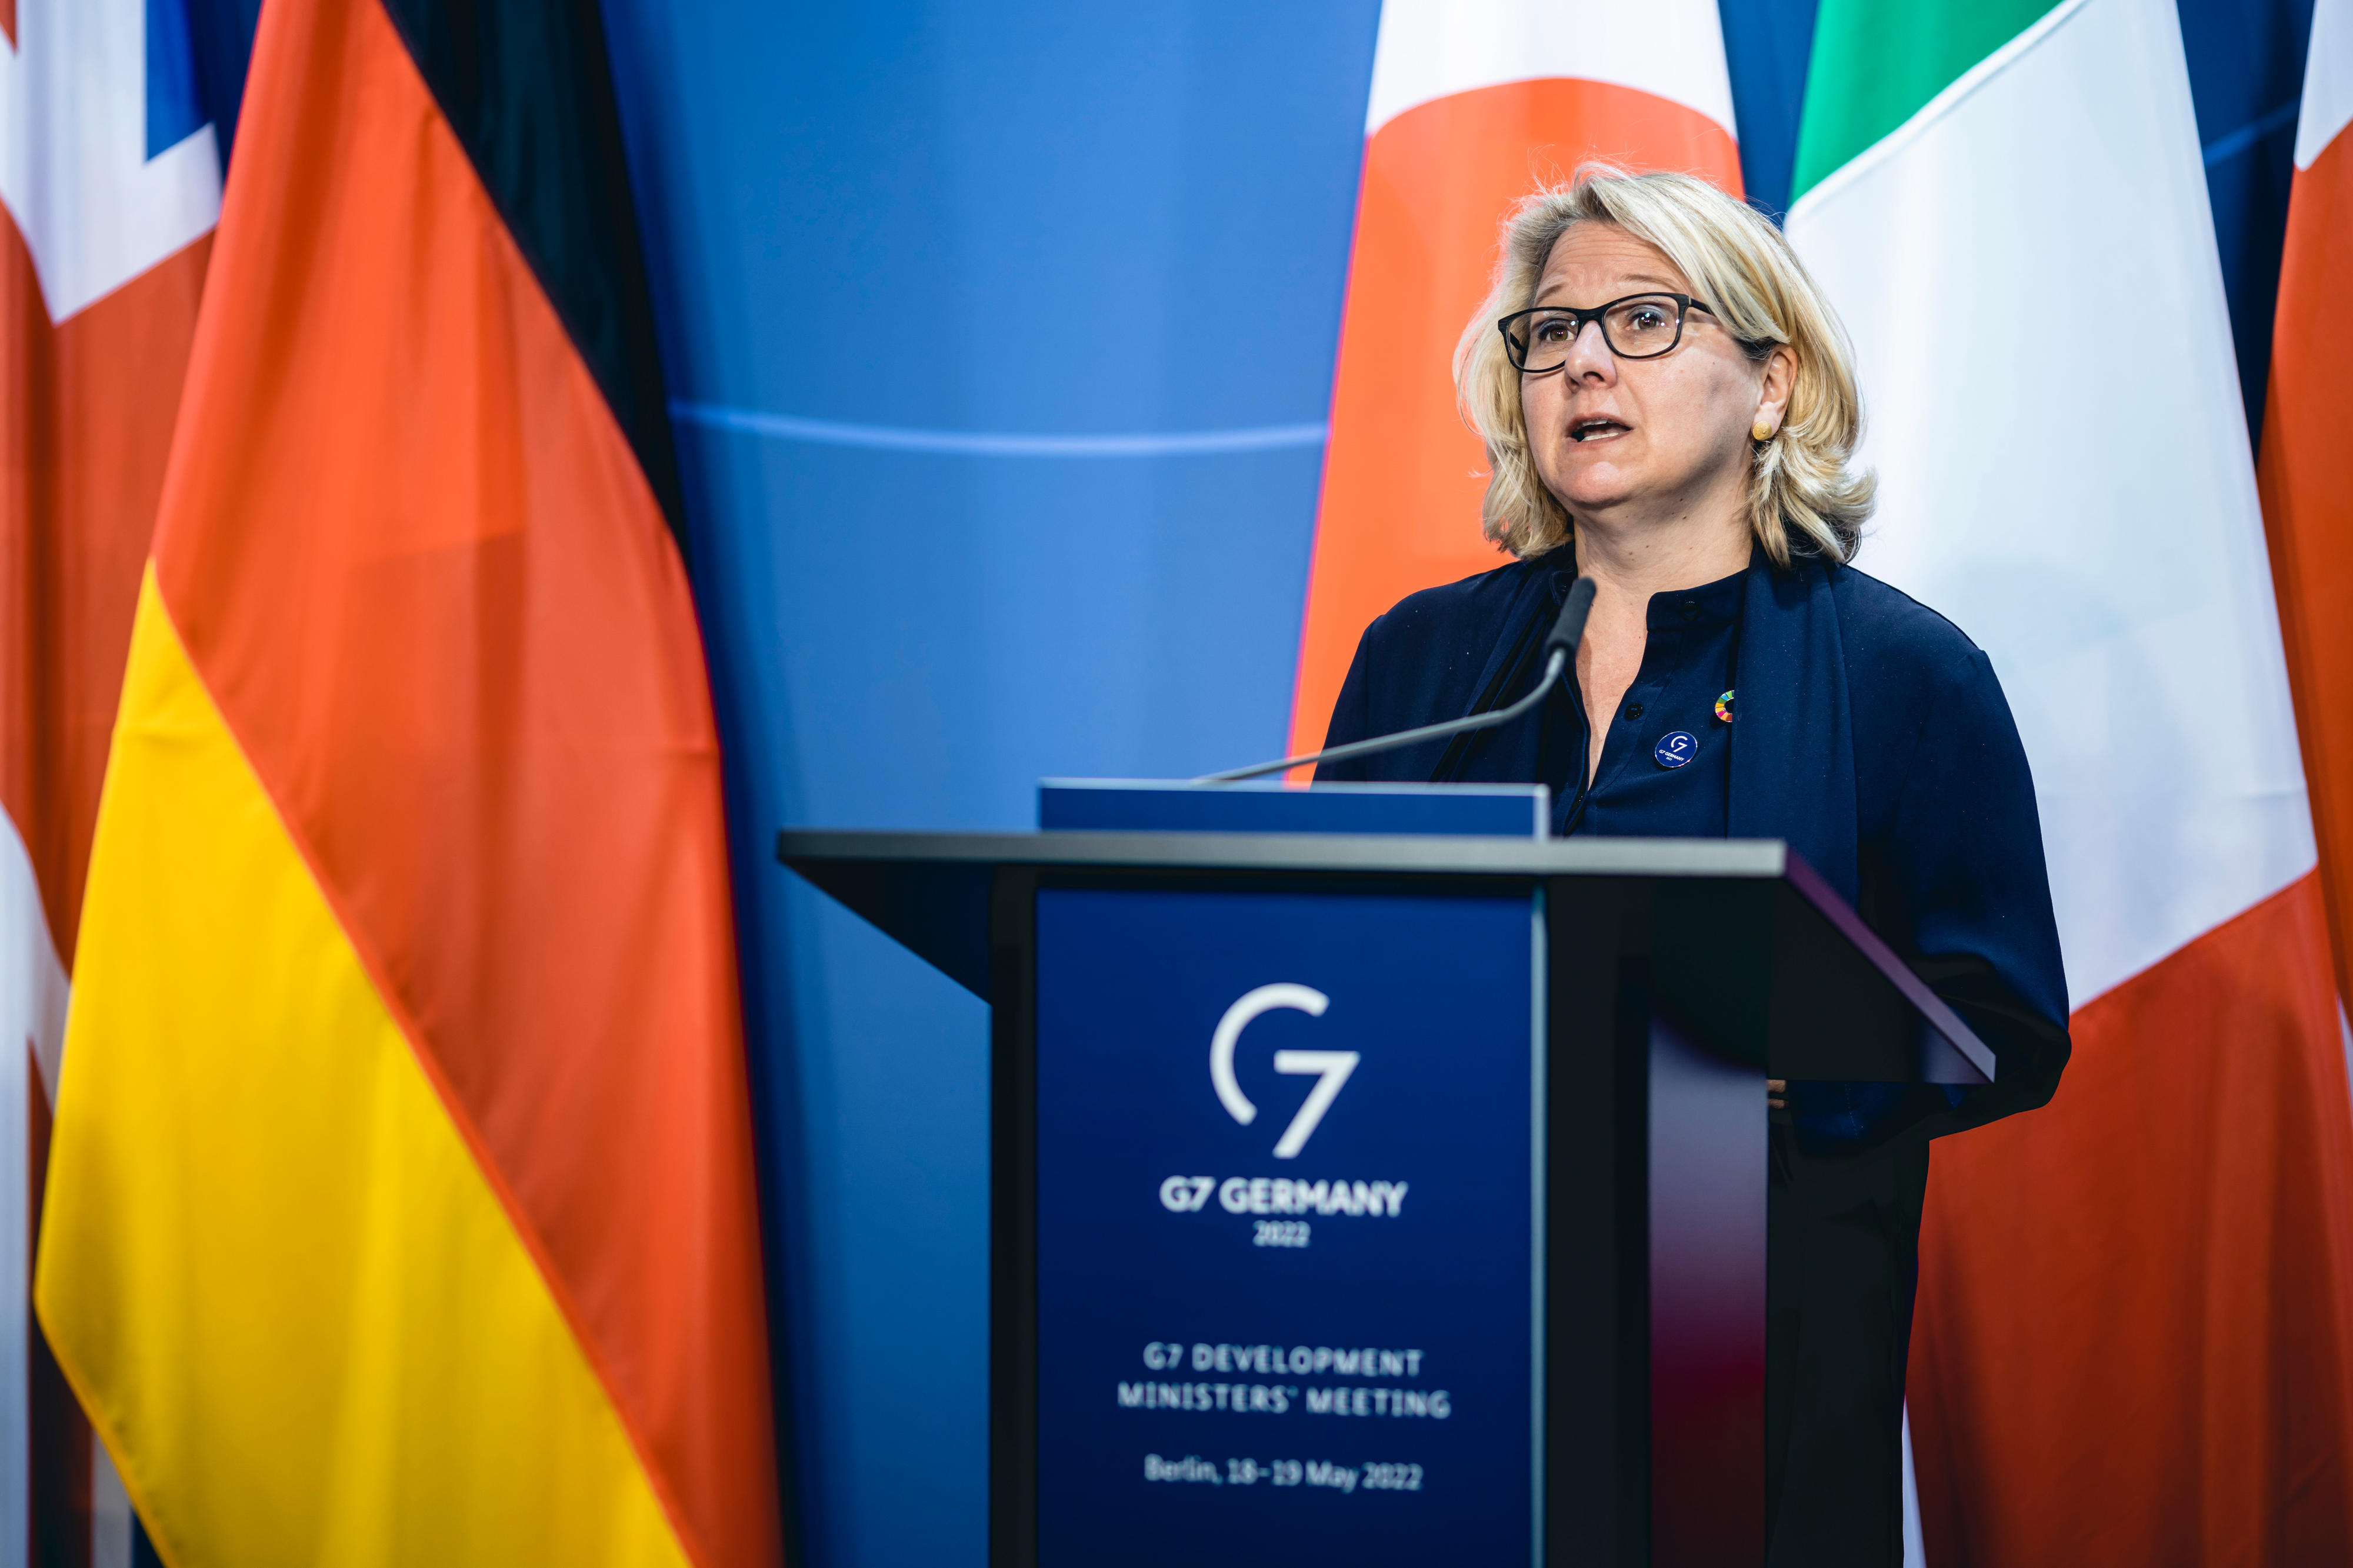 Bundesestwicklungsministerin Svenja Schulze spricht auf der Eröffnungspressekonferenz im Rahmen des G7-Treffens der Entwicklungsminister*innen in Berlin